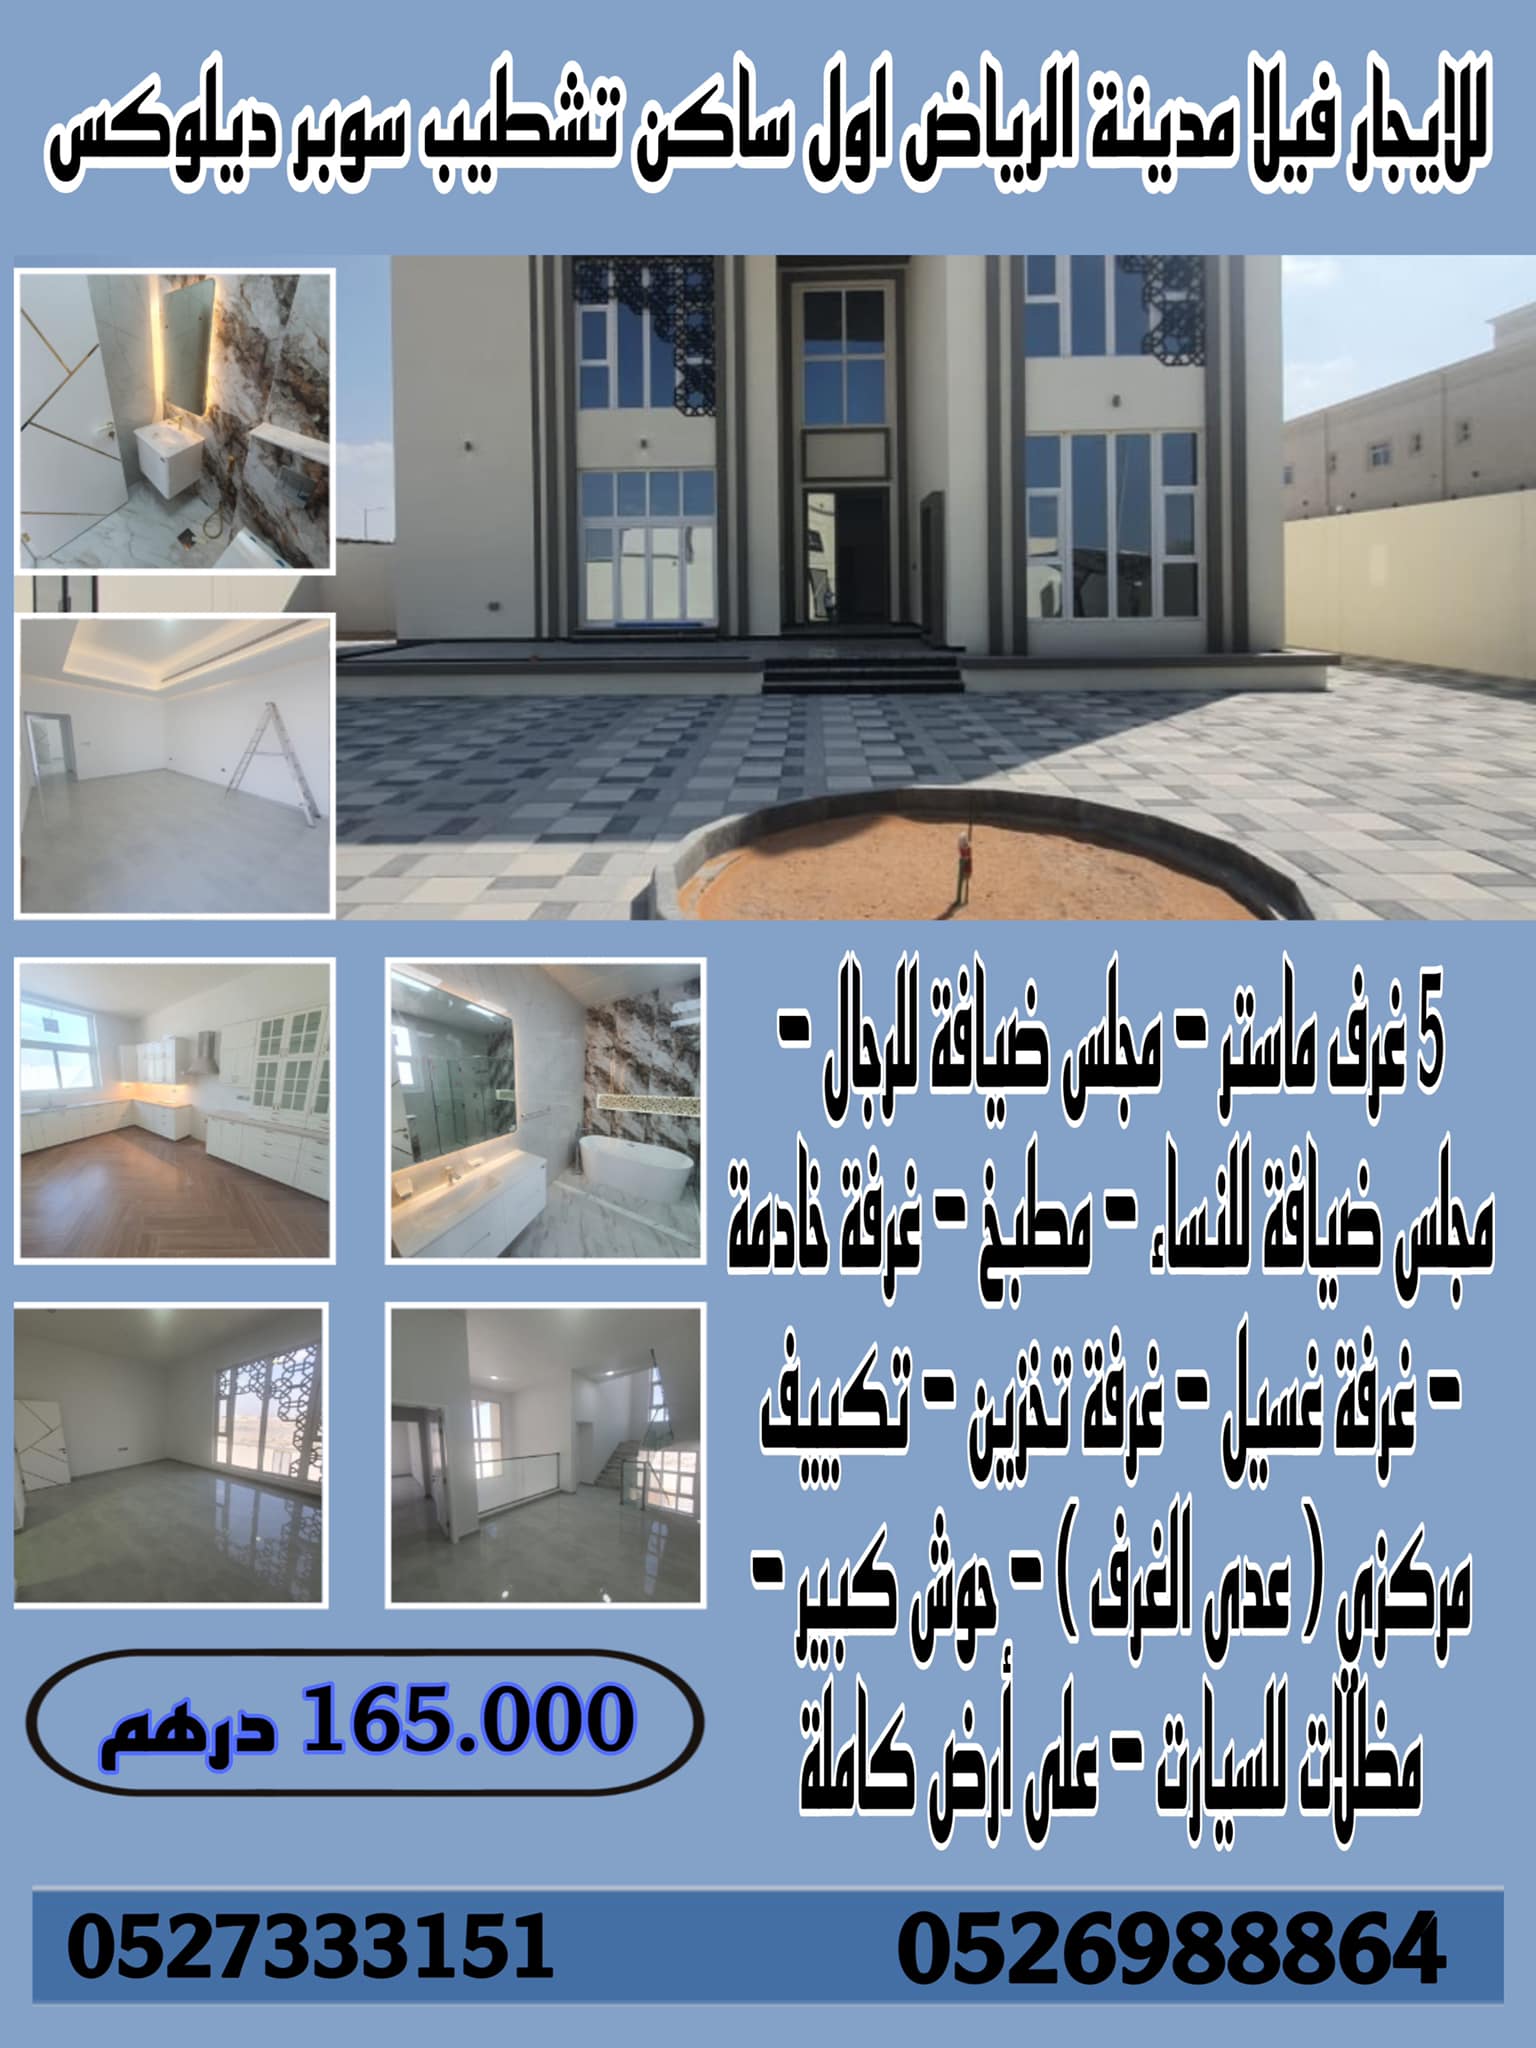 فيلا للإيجار - أبوظبي - مدينة الرياض ، جنوب الشامخة - تتكون من - 5 غرف ماستر - مجلس ضيافة للرجال - م